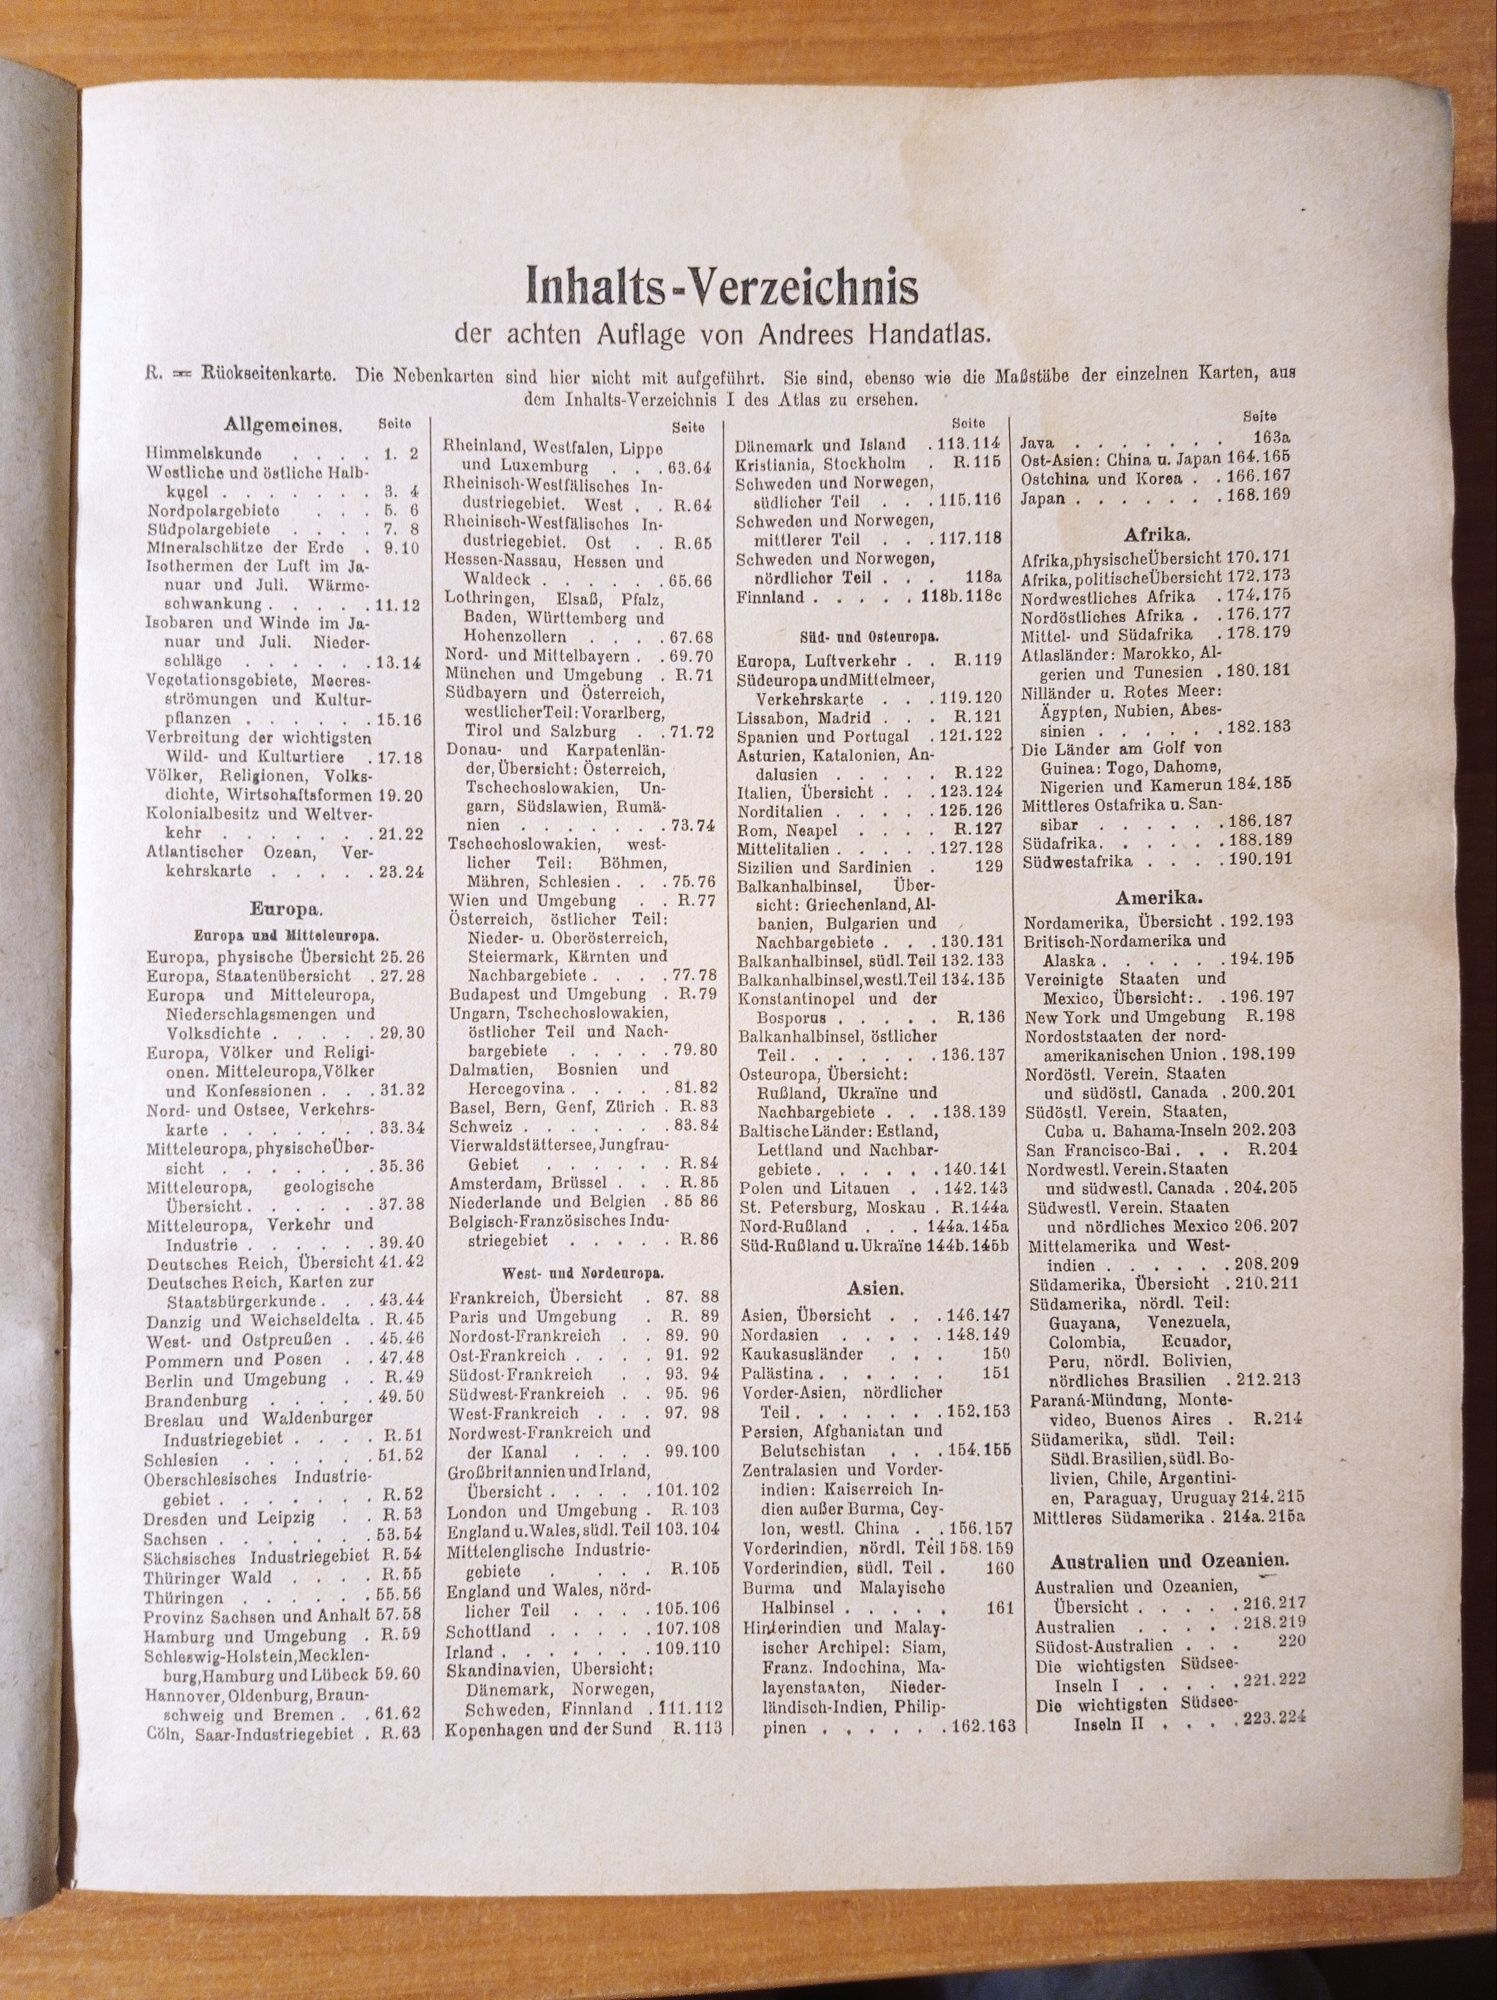 Indeks nazw do atlasu - Andrees Handatlas. 8 wydanie z 1922 roku.